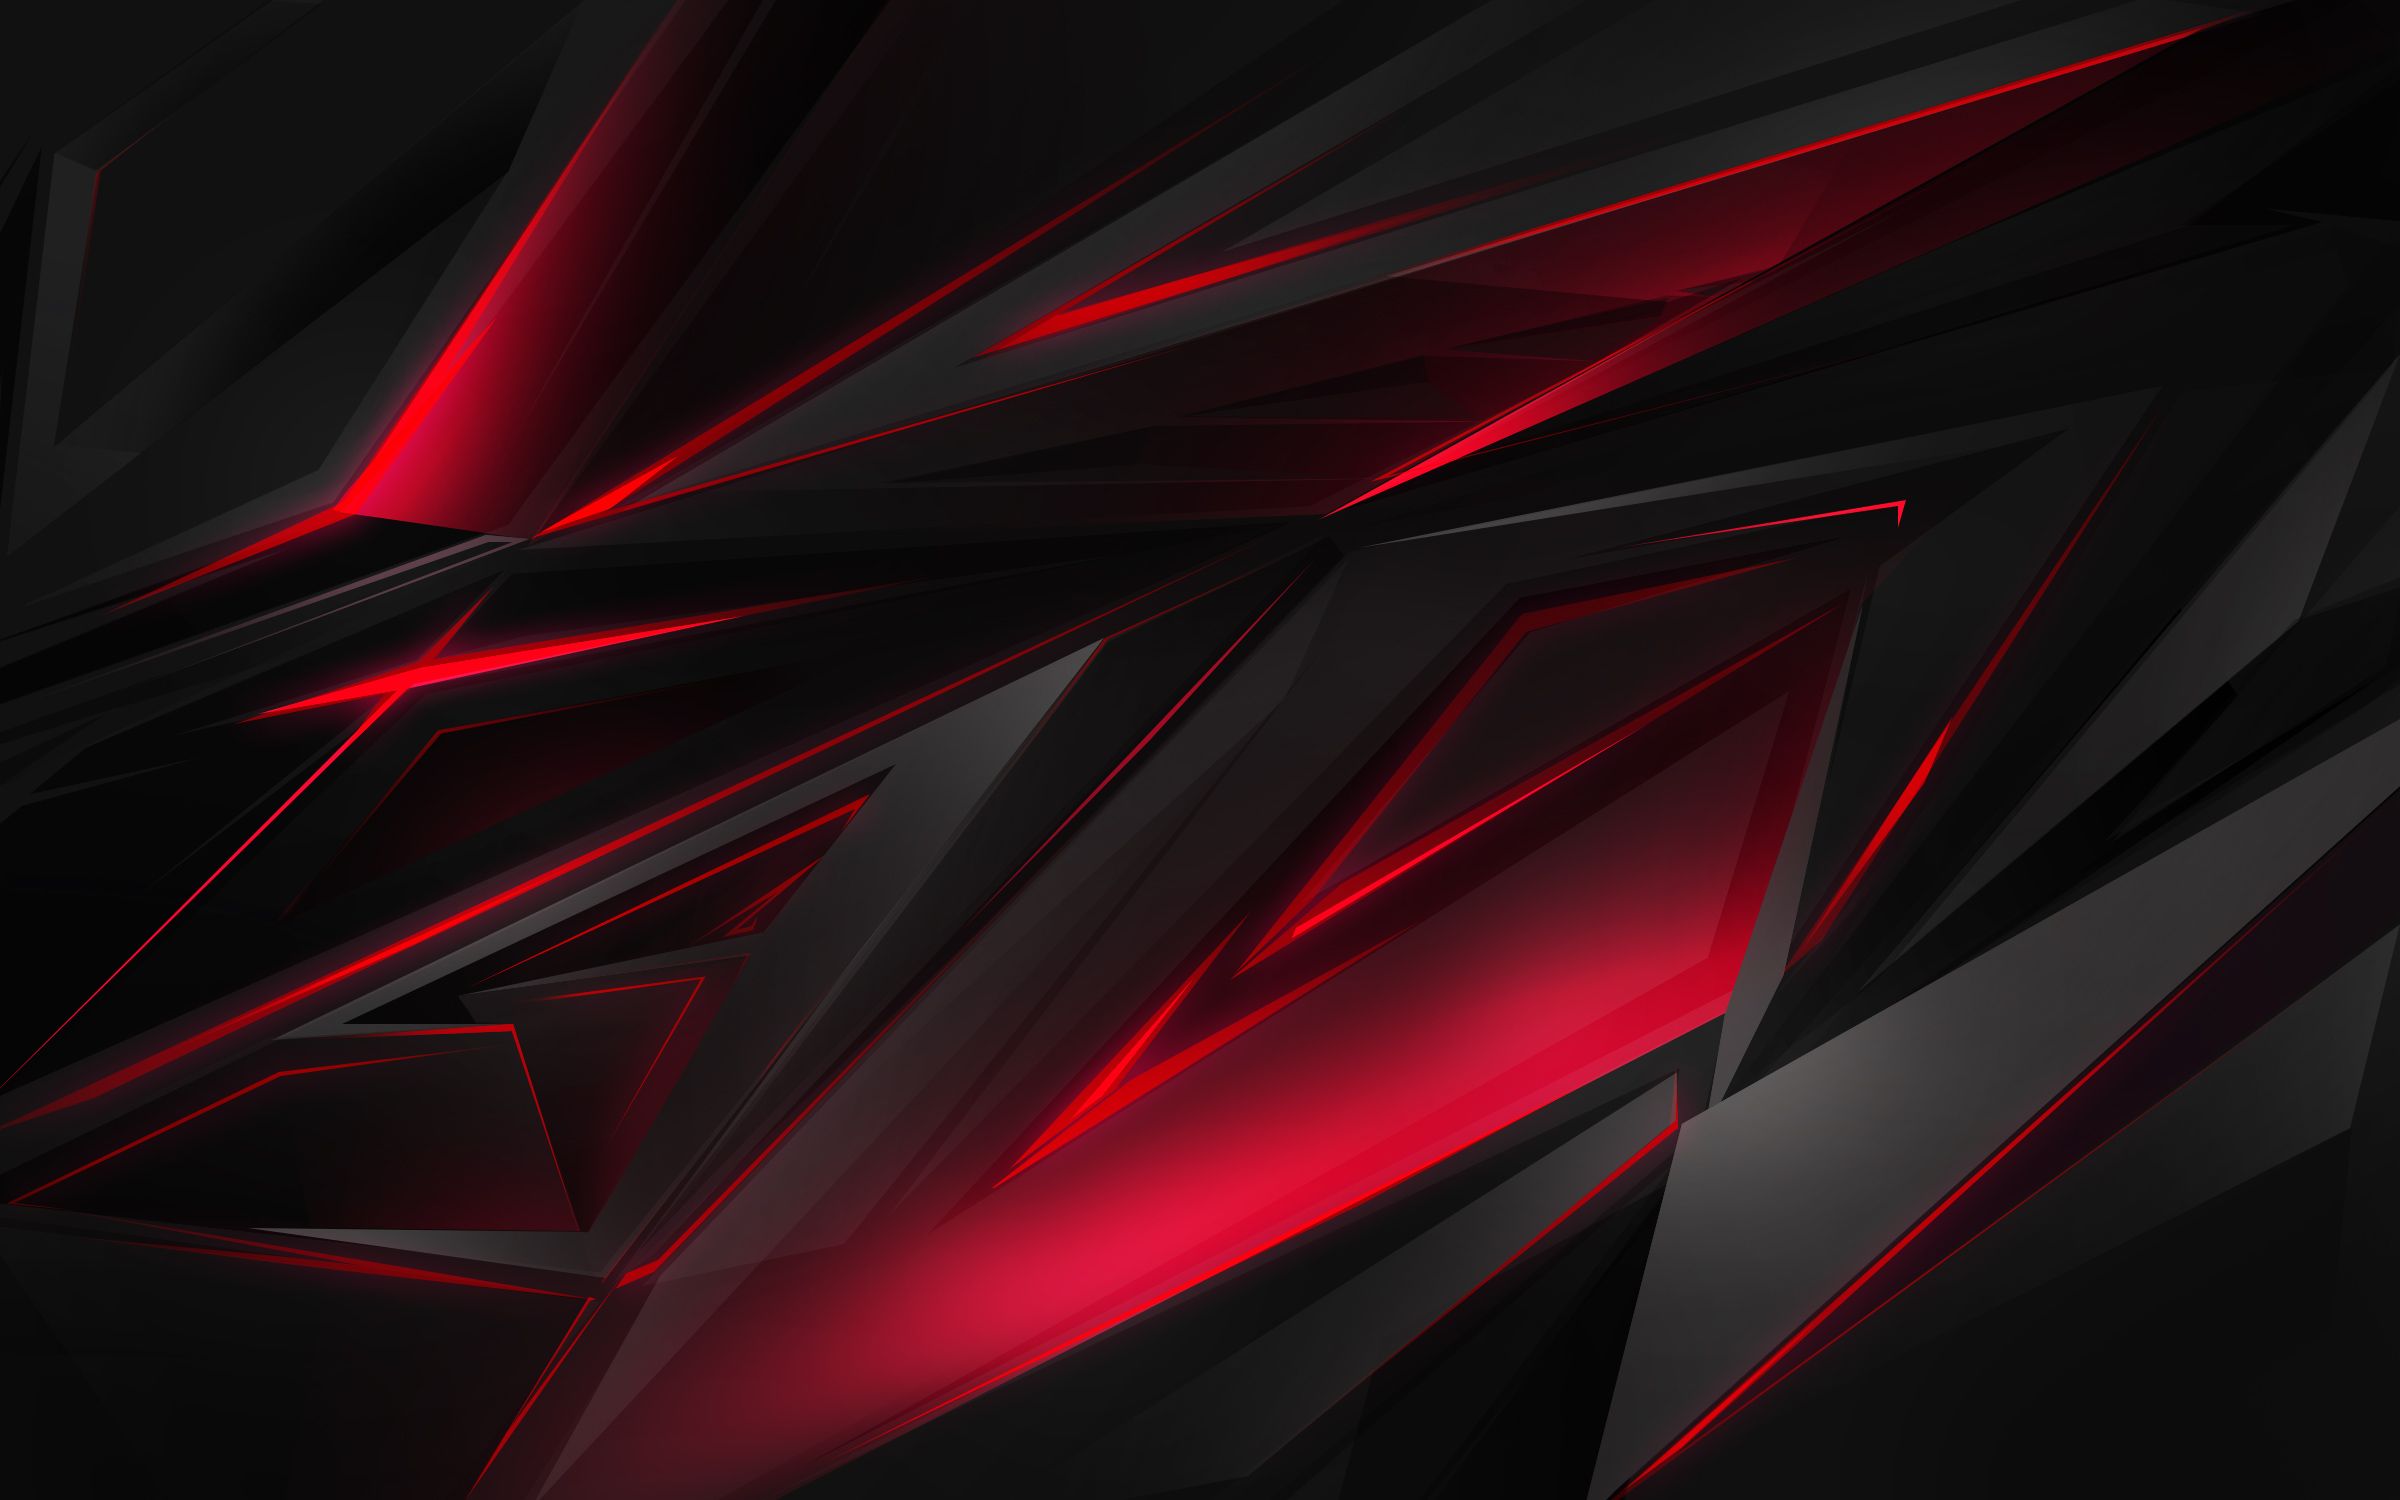 Black And Red Backgrounds Hd For Desktop Pixelstalk Net